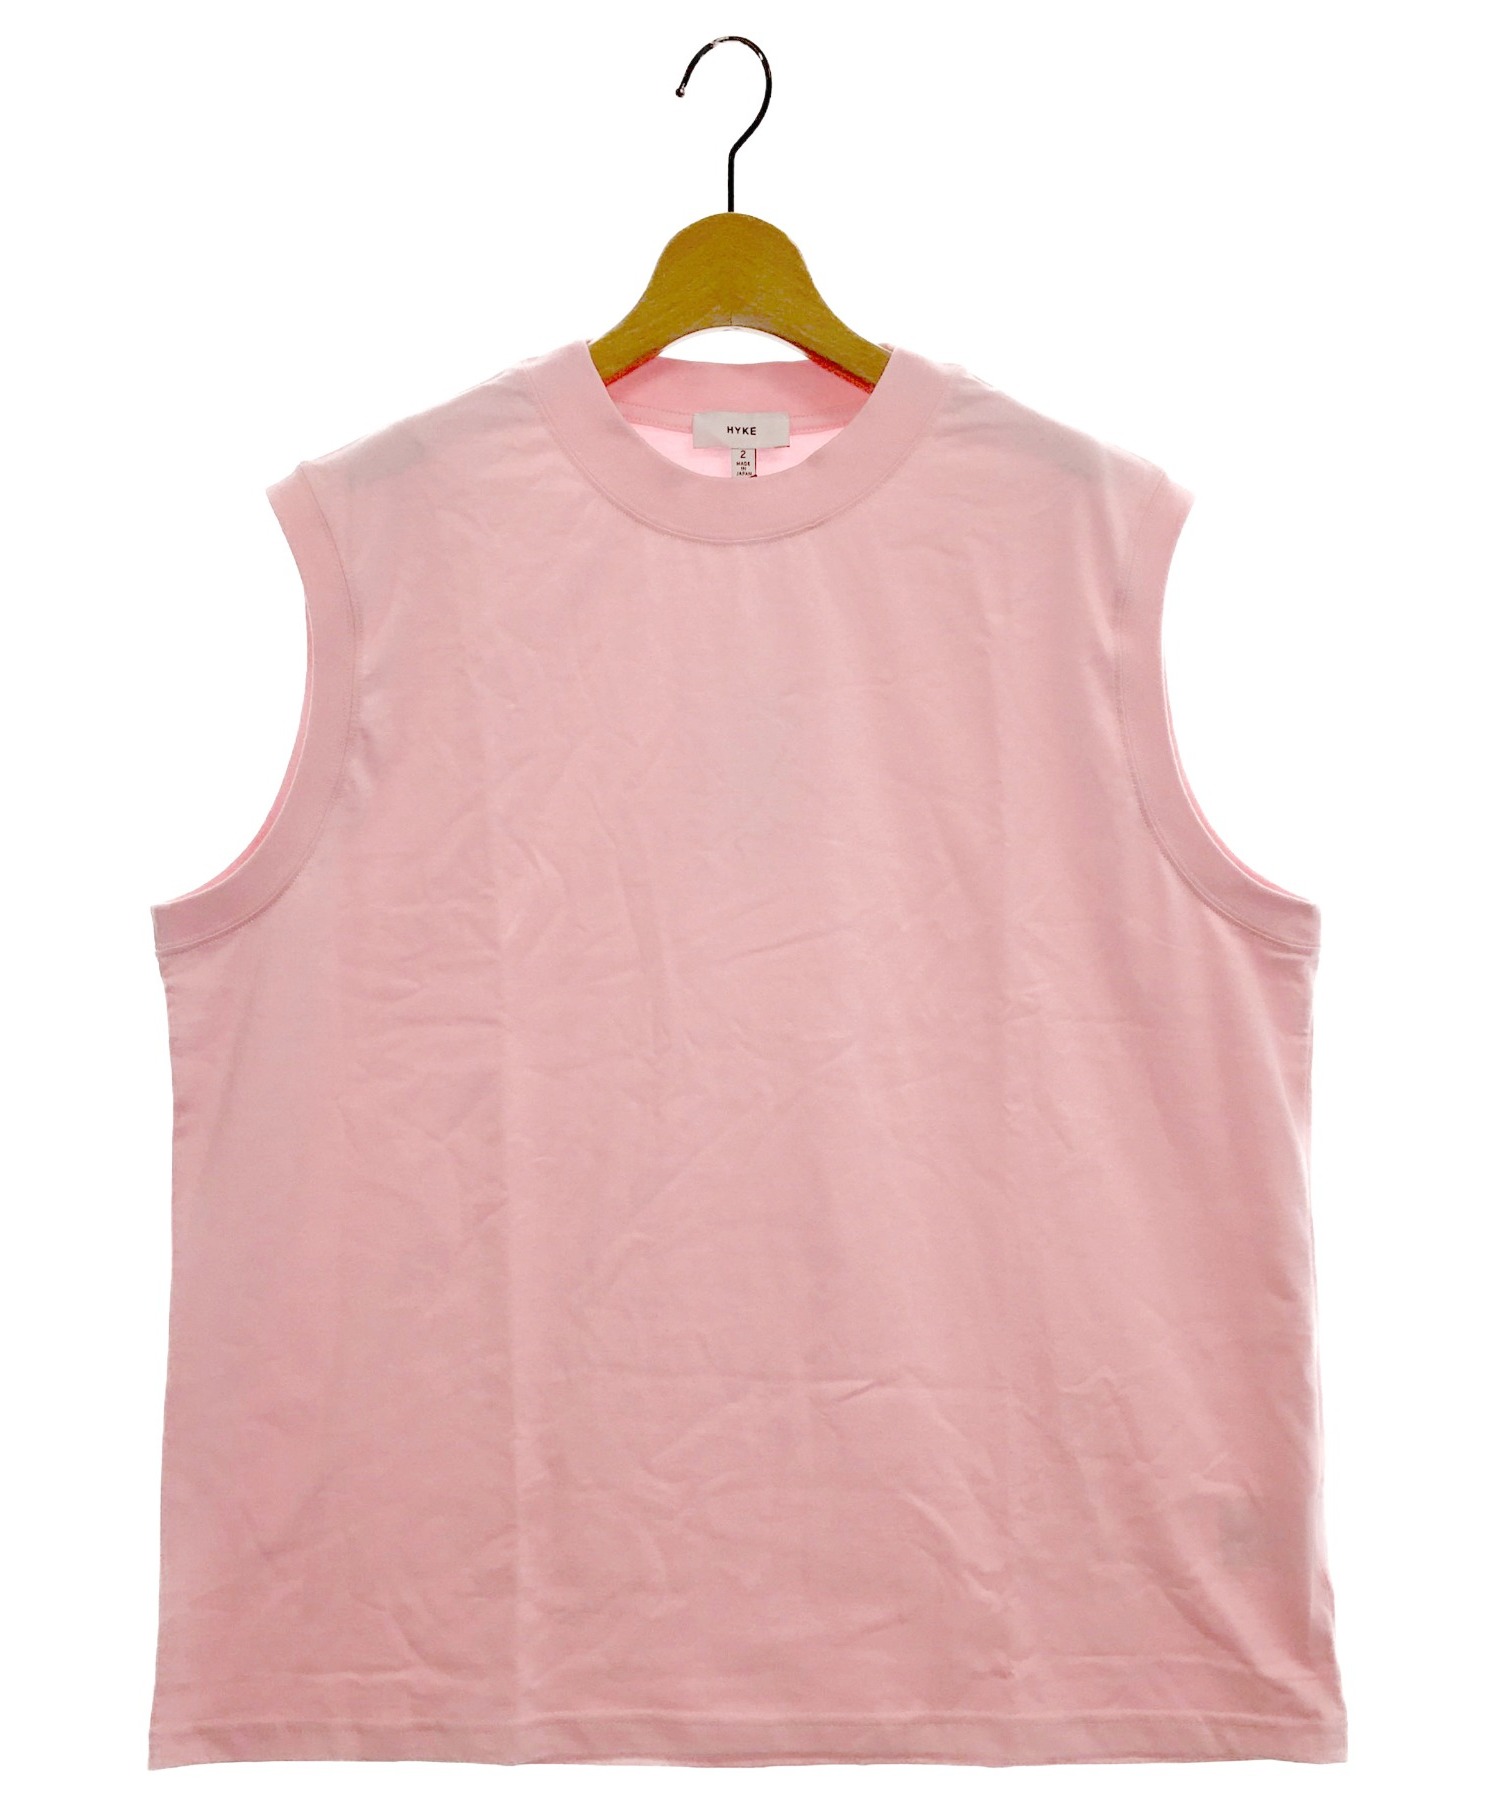 中古 古着通販 Hyke ハイク ビッグフィットスリーブレスtシャツ ピンク サイズ 2 ブランド 古着通販 トレファク公式 Trefac Fashion